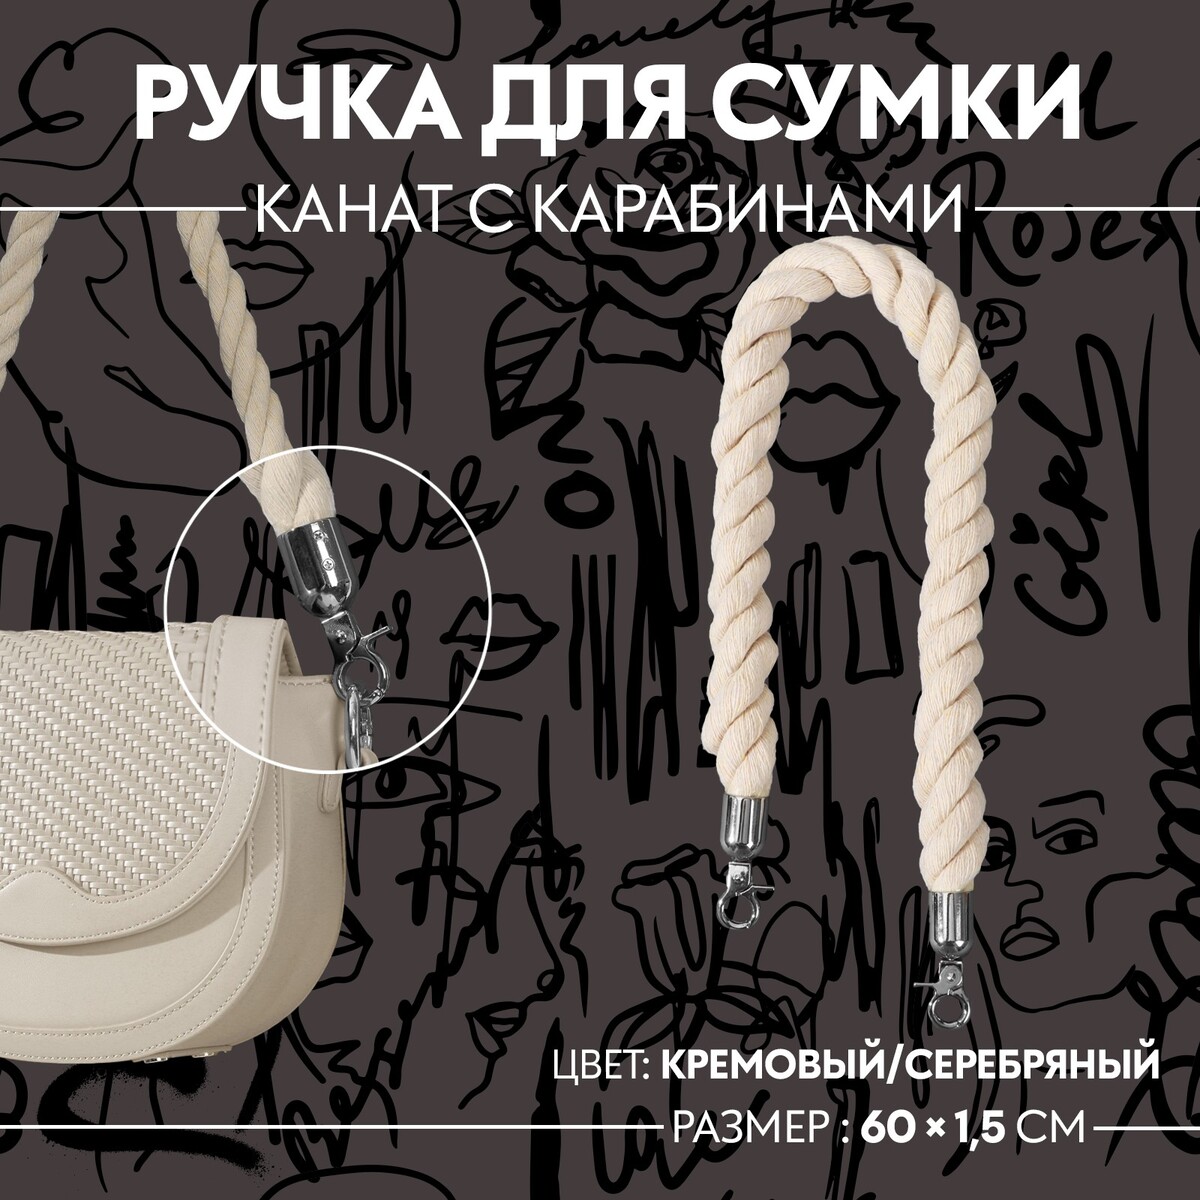 Ручка для сумки, канат, 60 × 1,5 см, с карабинами, цвет кремовый/серебряный канат для бицепса трицепса bronze gym bgr07